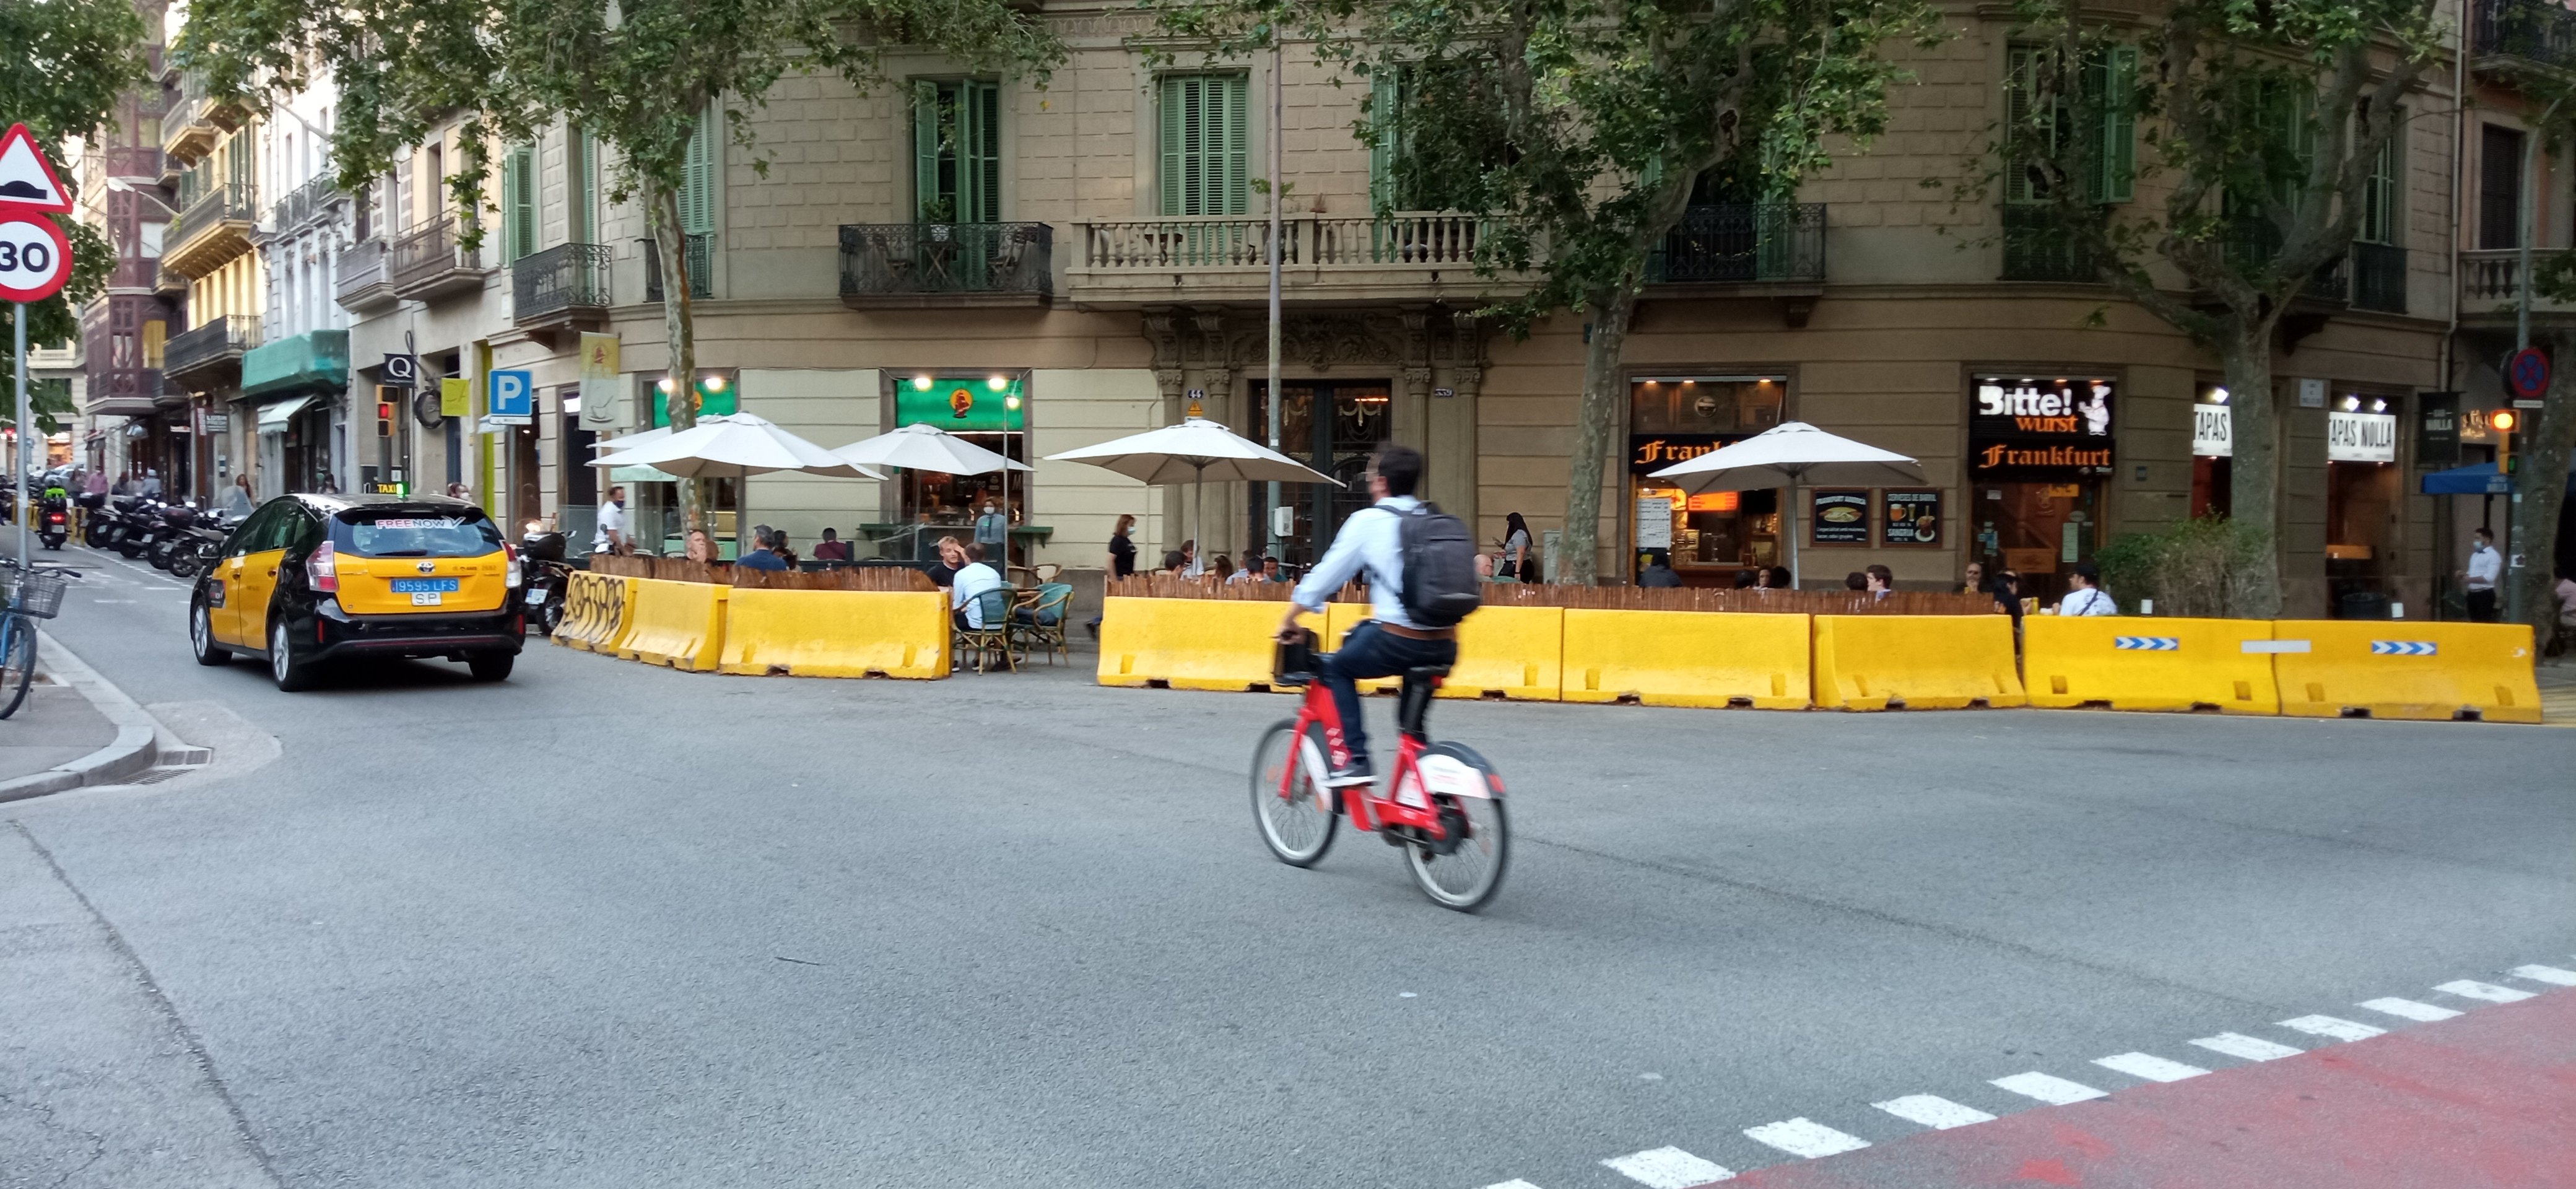 Las terrazas en calzada se consolidan en Barcelona